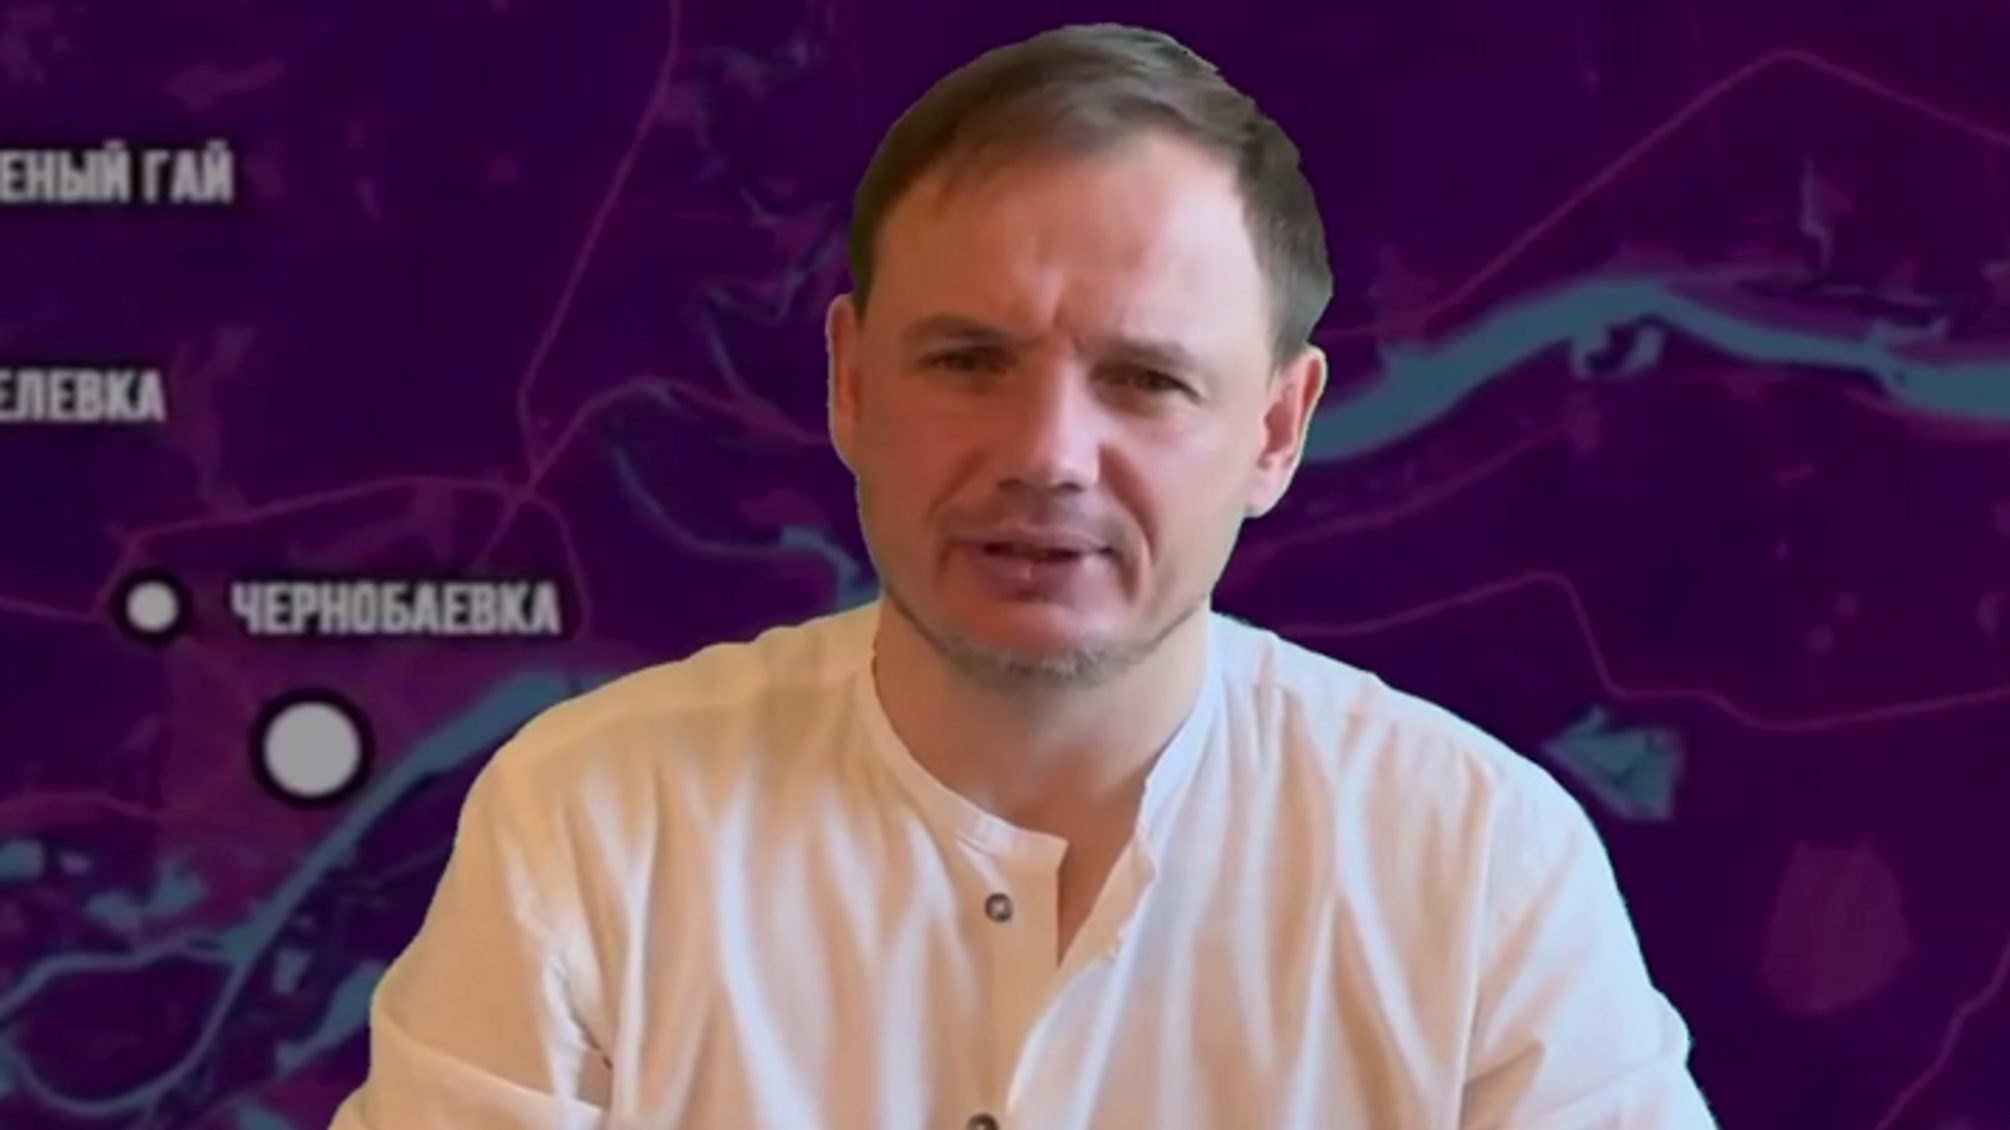 Гауляйтер Стремоусов жалуется, что херсонцы не хотят пользоваться рублями: угрожает  'депортировать в Украину'